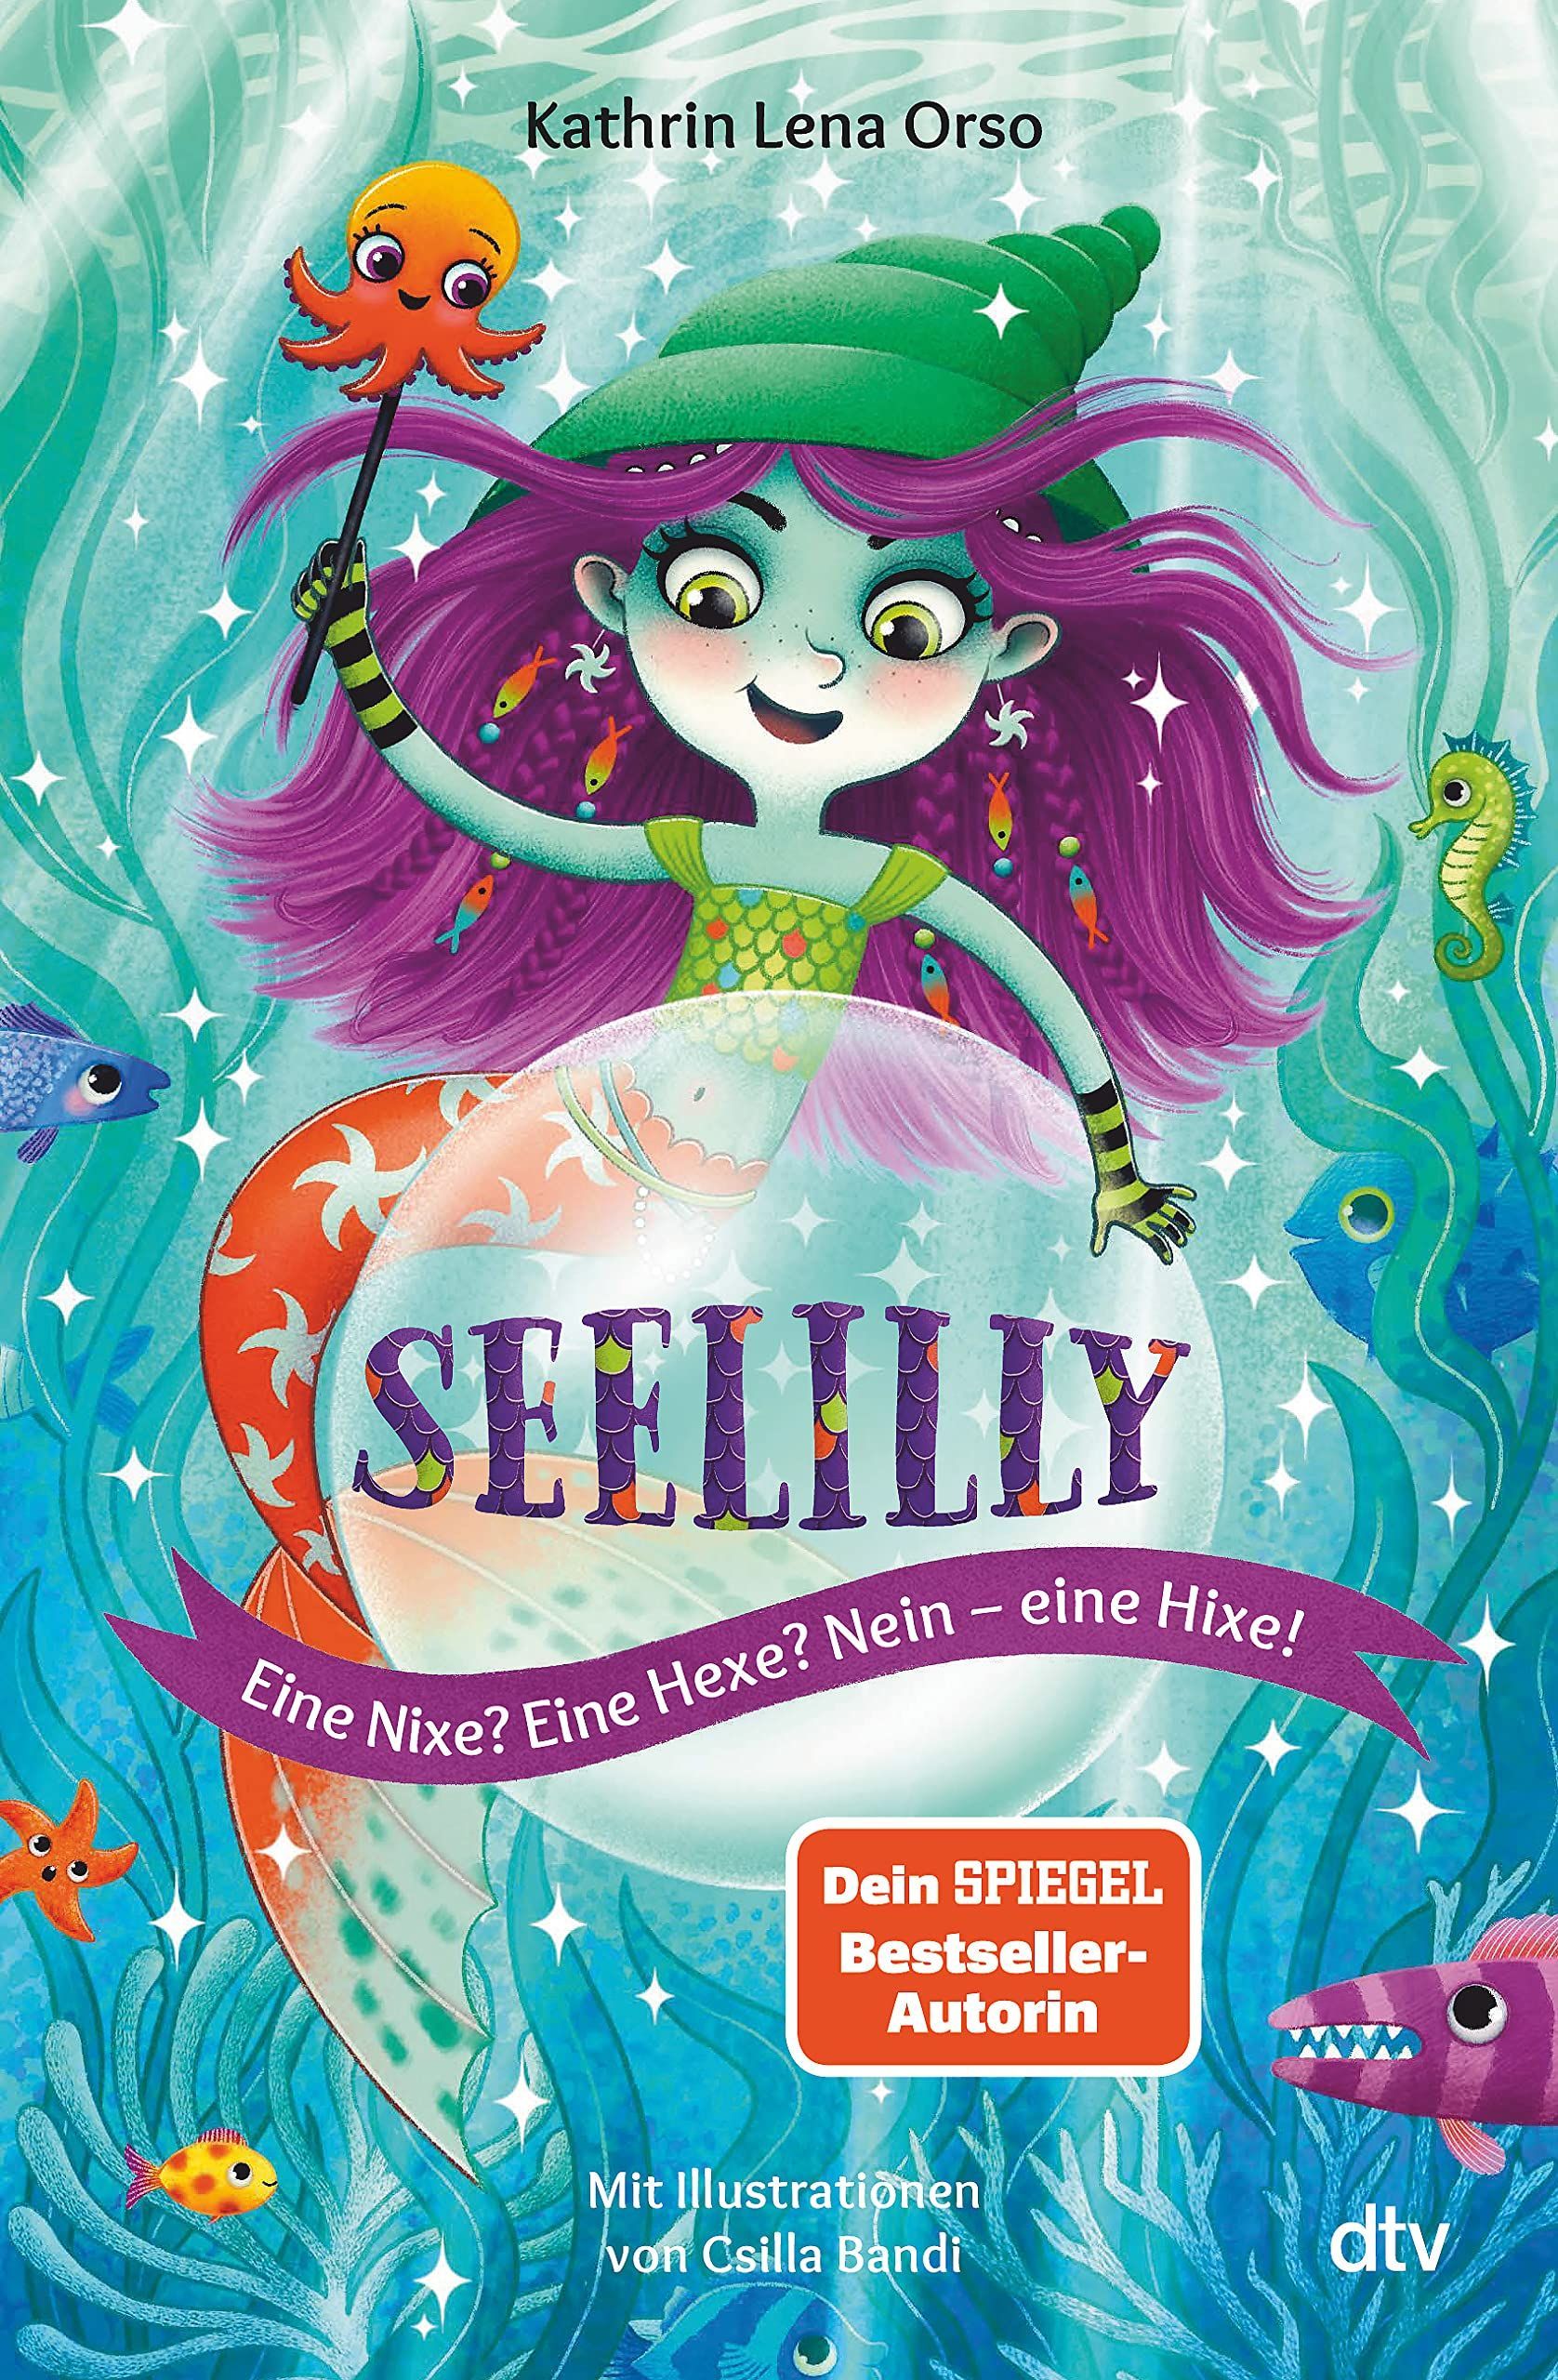 Seelilly, Wasserhixe, Hixe, Tintbert, Dtv, Kinderbuch, Kinderbuchreihe, Unterwasserwelt